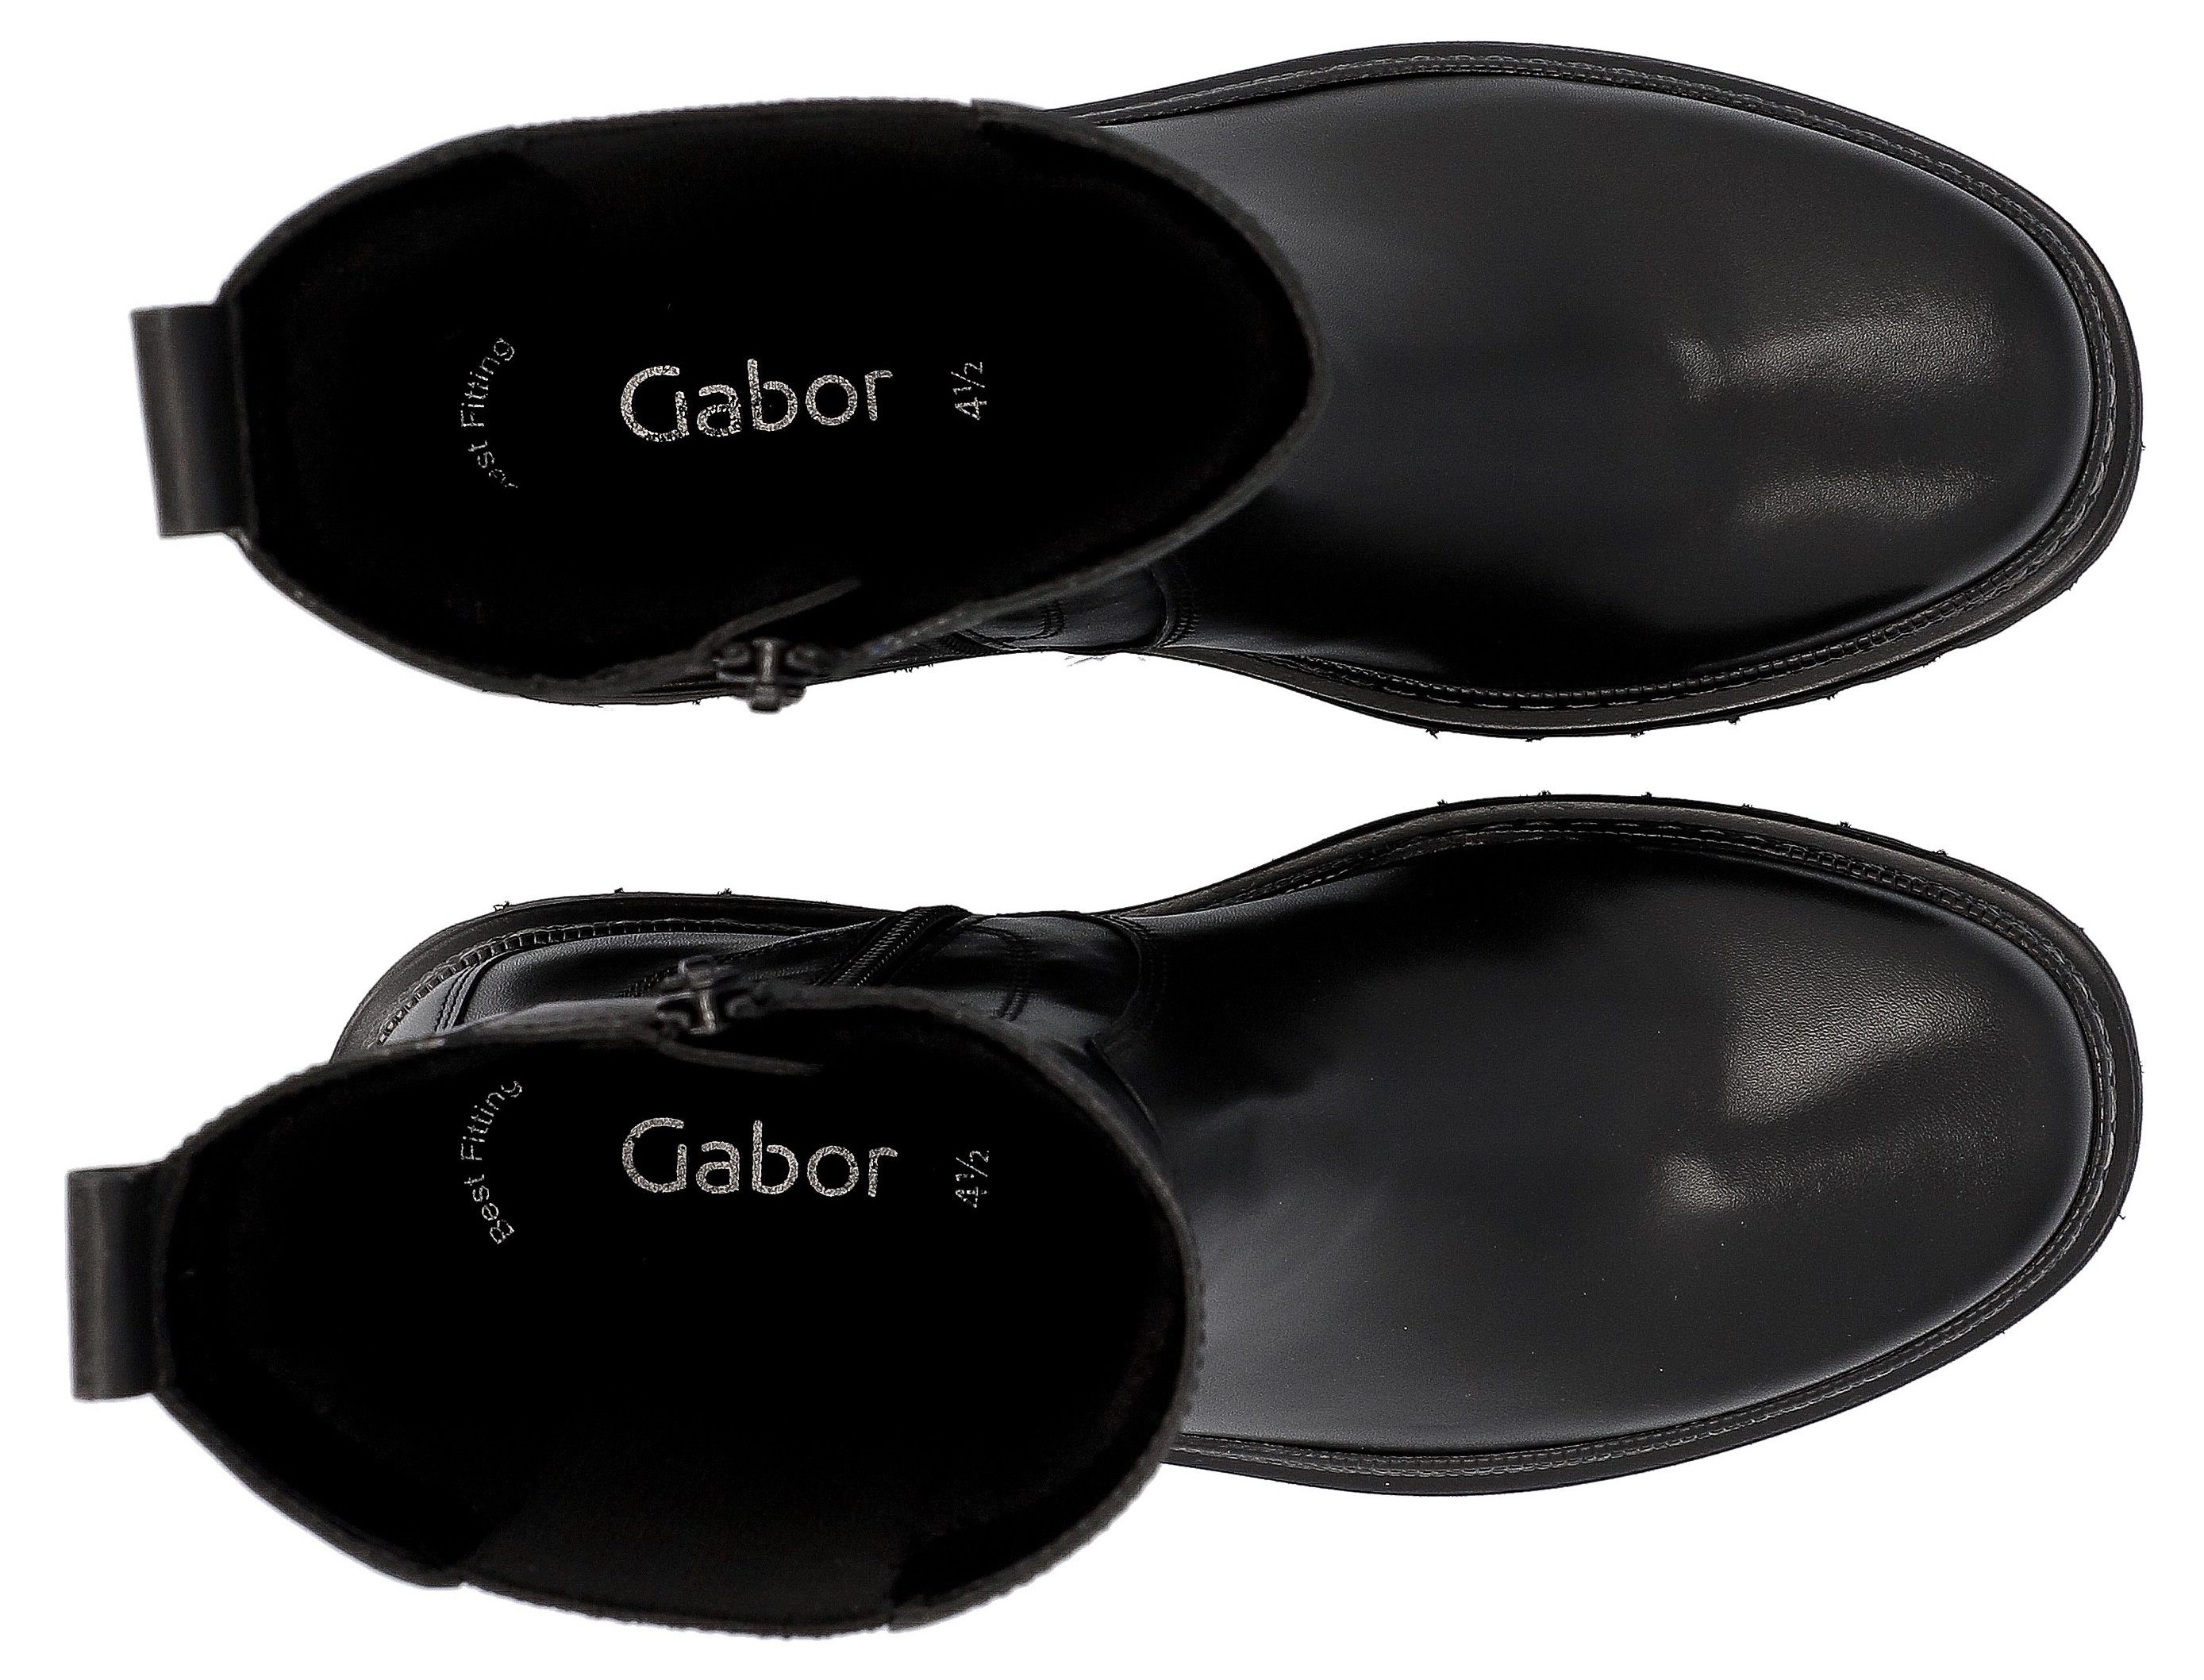 Gabor Chelseaboots Ausstattung Fitting Best schwarz-weiß mit